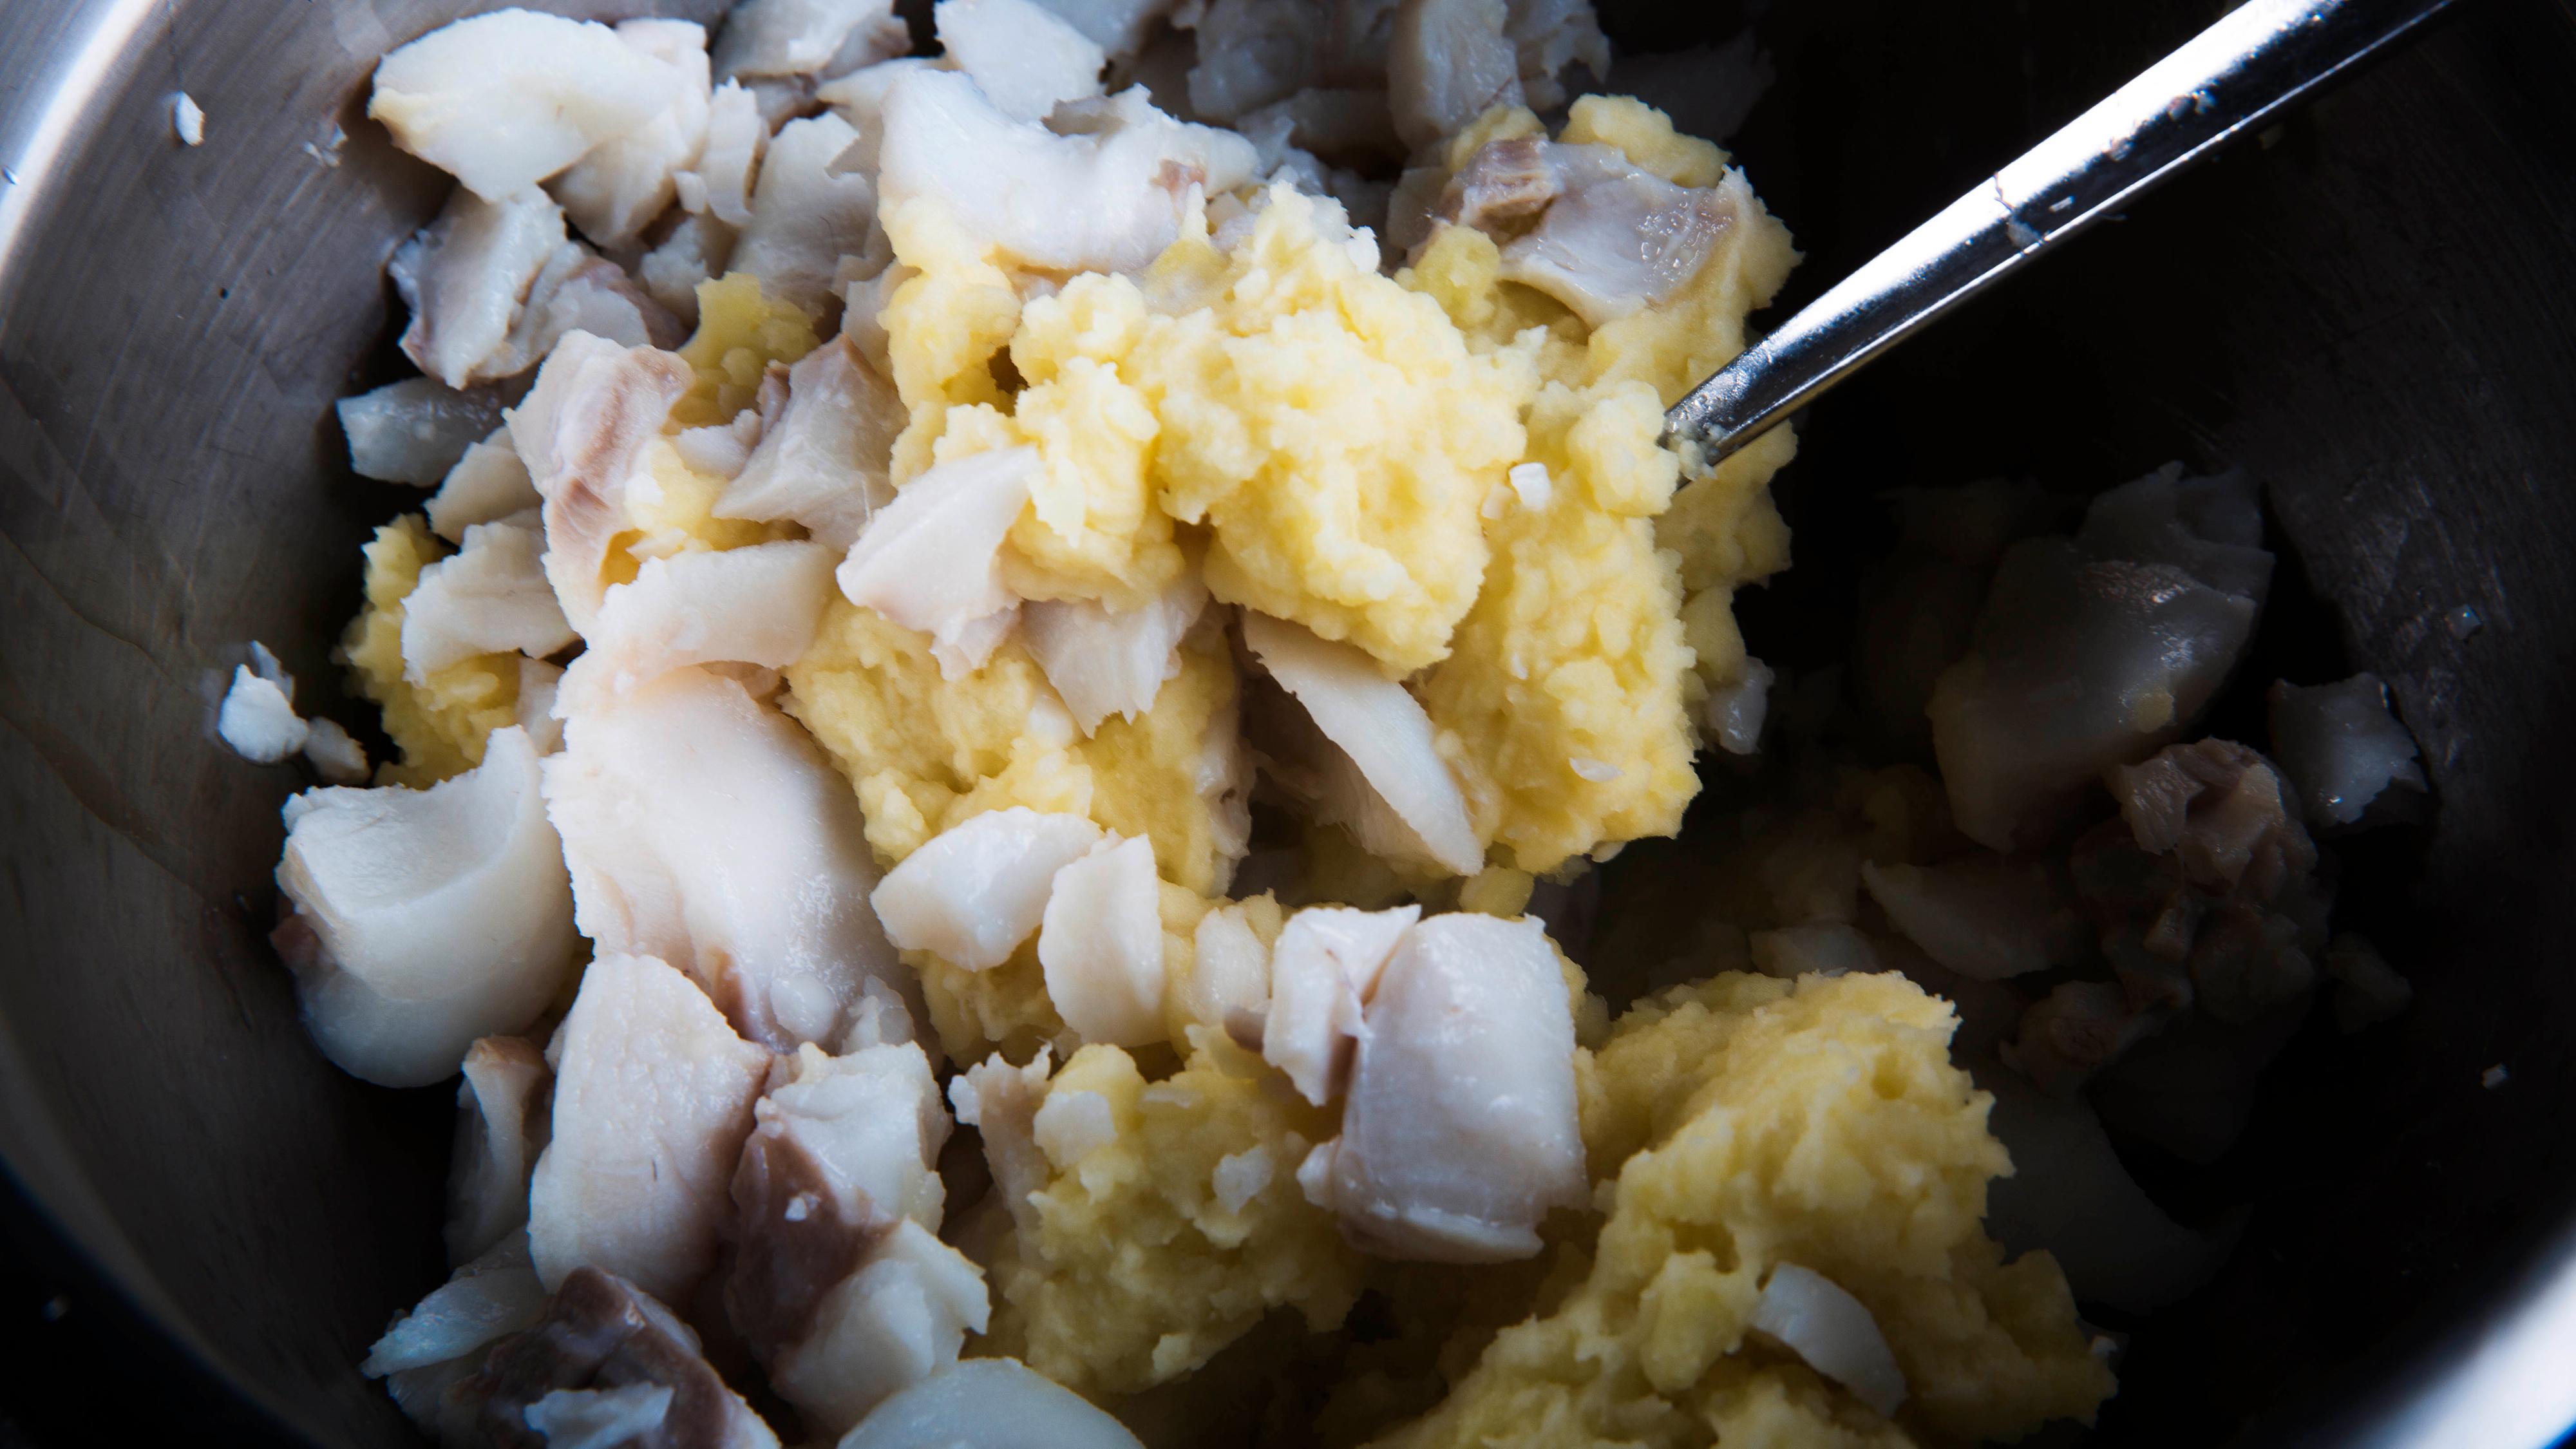 Skrell potetene og kok disse møre i lettsaltet vann. Mos potetene lett sammen med smøret. Vend inn fiskekjøttet, ha i finhakket bladpersille. Smak til med salt og pepper.